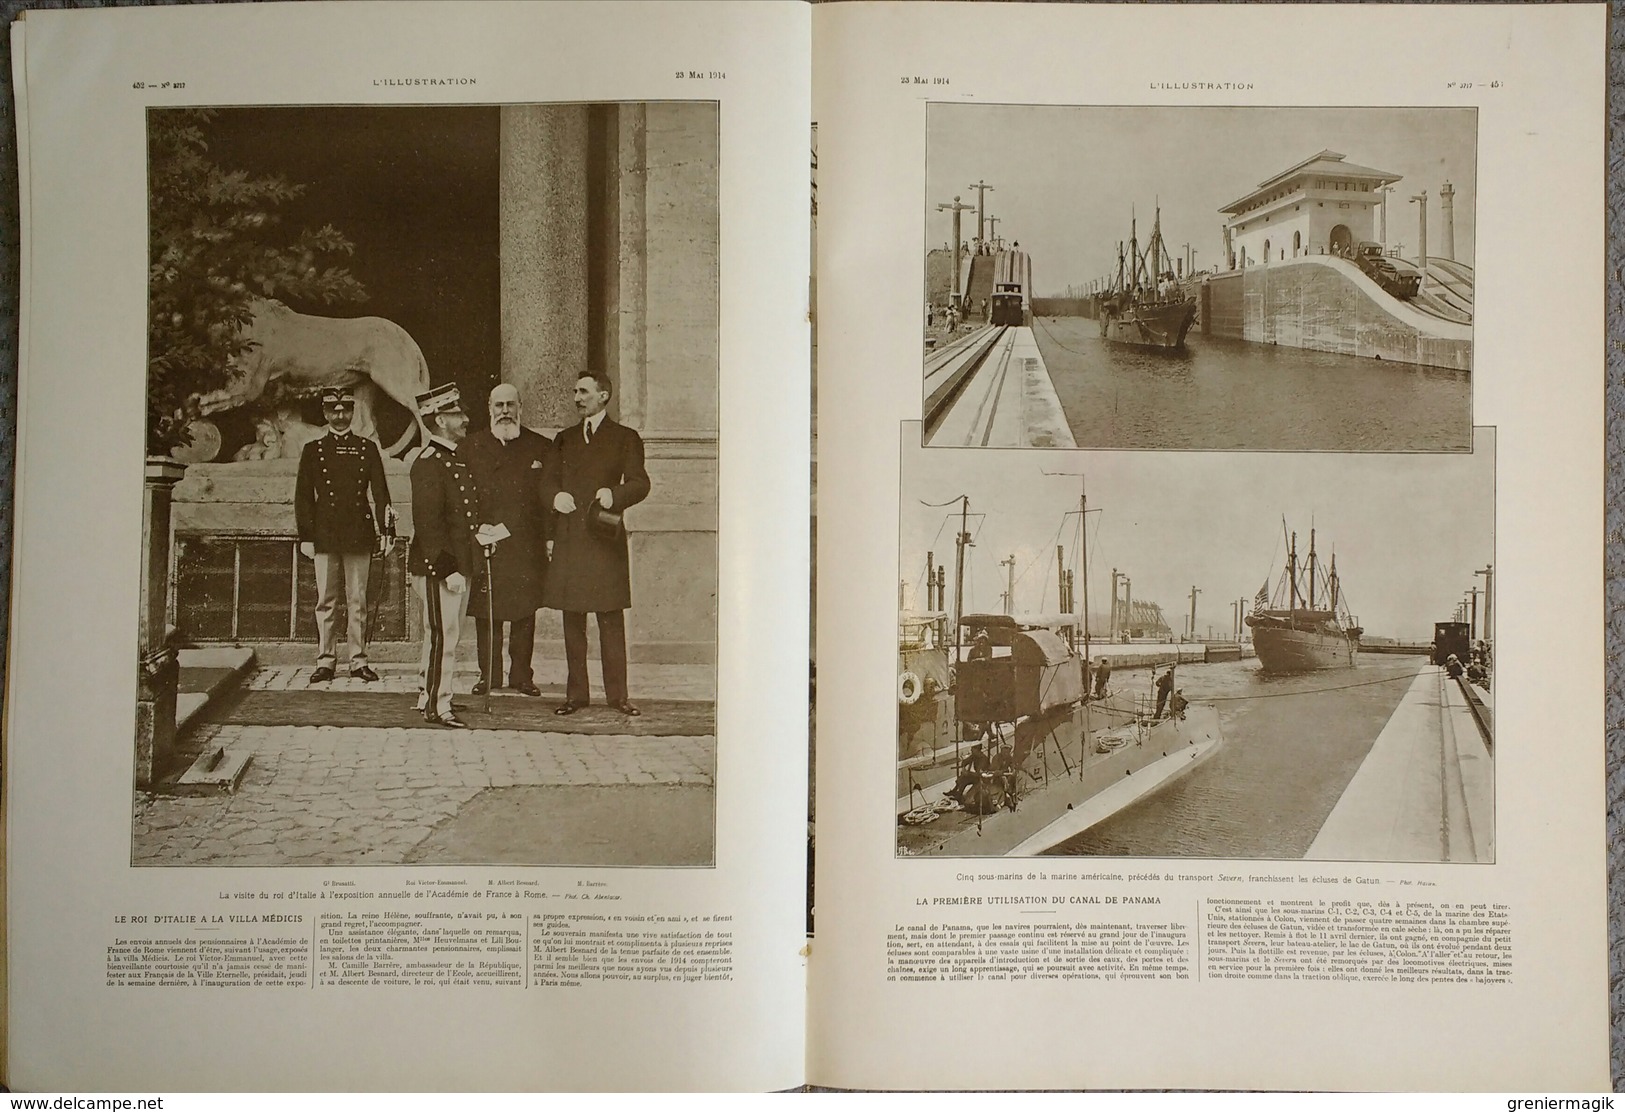 L'Illustration 3717 23 mai 1914 Etats-Unis au Mexique/Liaison Algérie-Maroc/Canal de Panama/Procès Hansi Colmar/Train